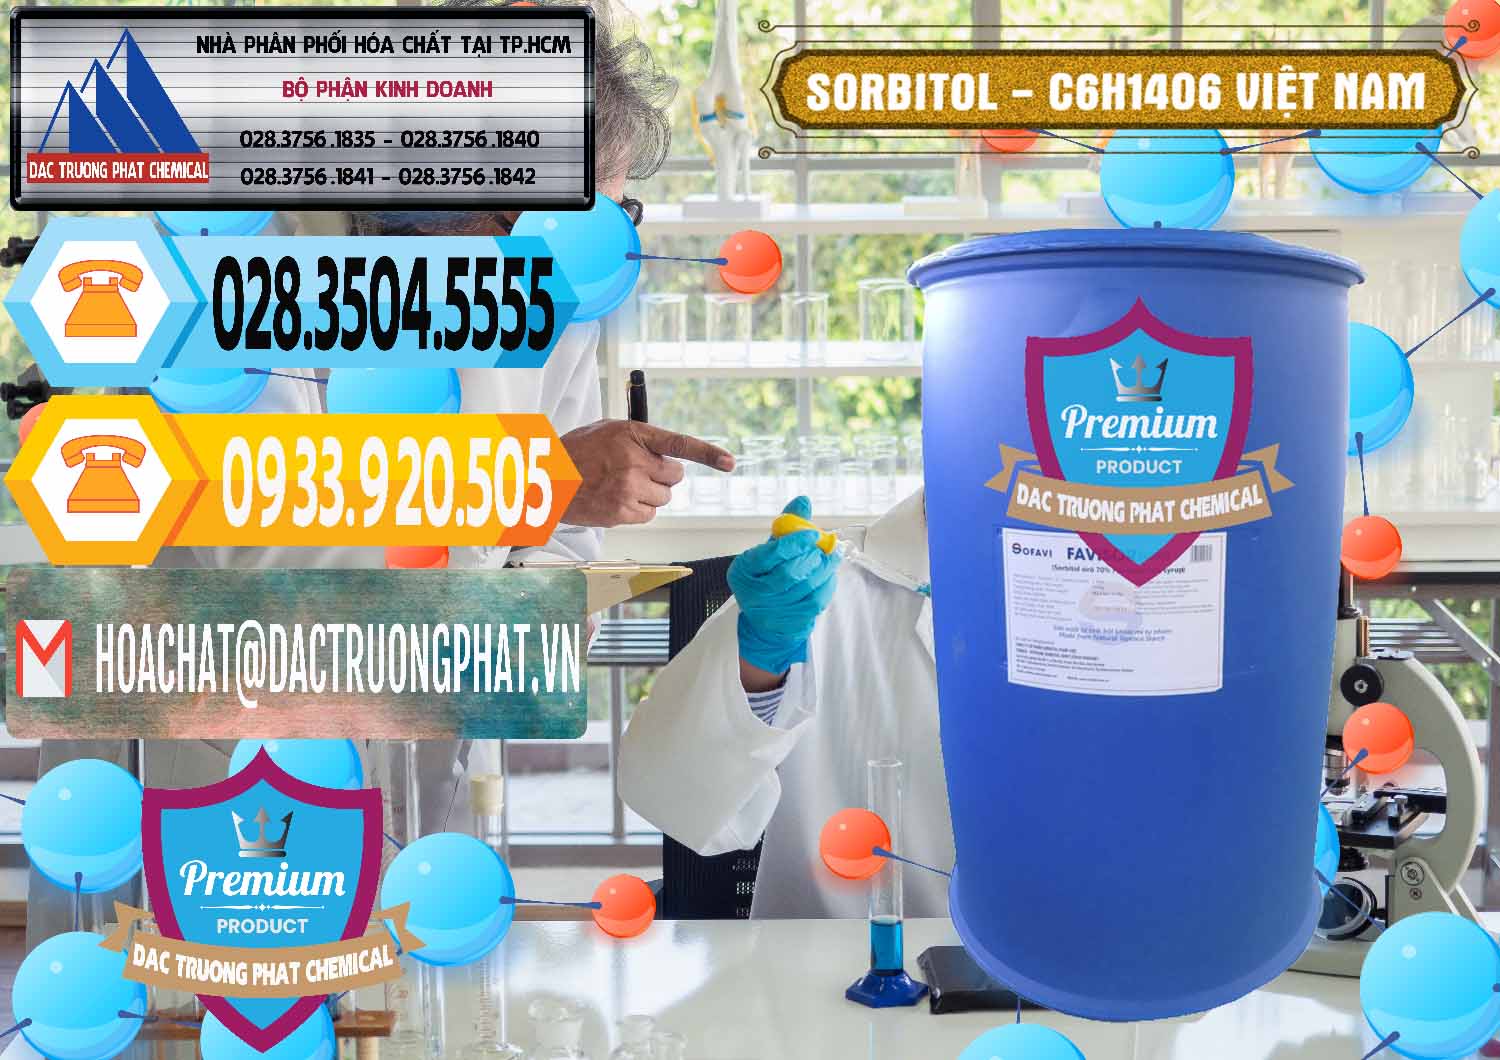 Nhà phân phối & bán Sorbitol - C6H14O6 Lỏng 70% Food Grade Việt Nam - 0438 - Cty chuyên cung ứng - bán hóa chất tại TP.HCM - hoachattayrua.net